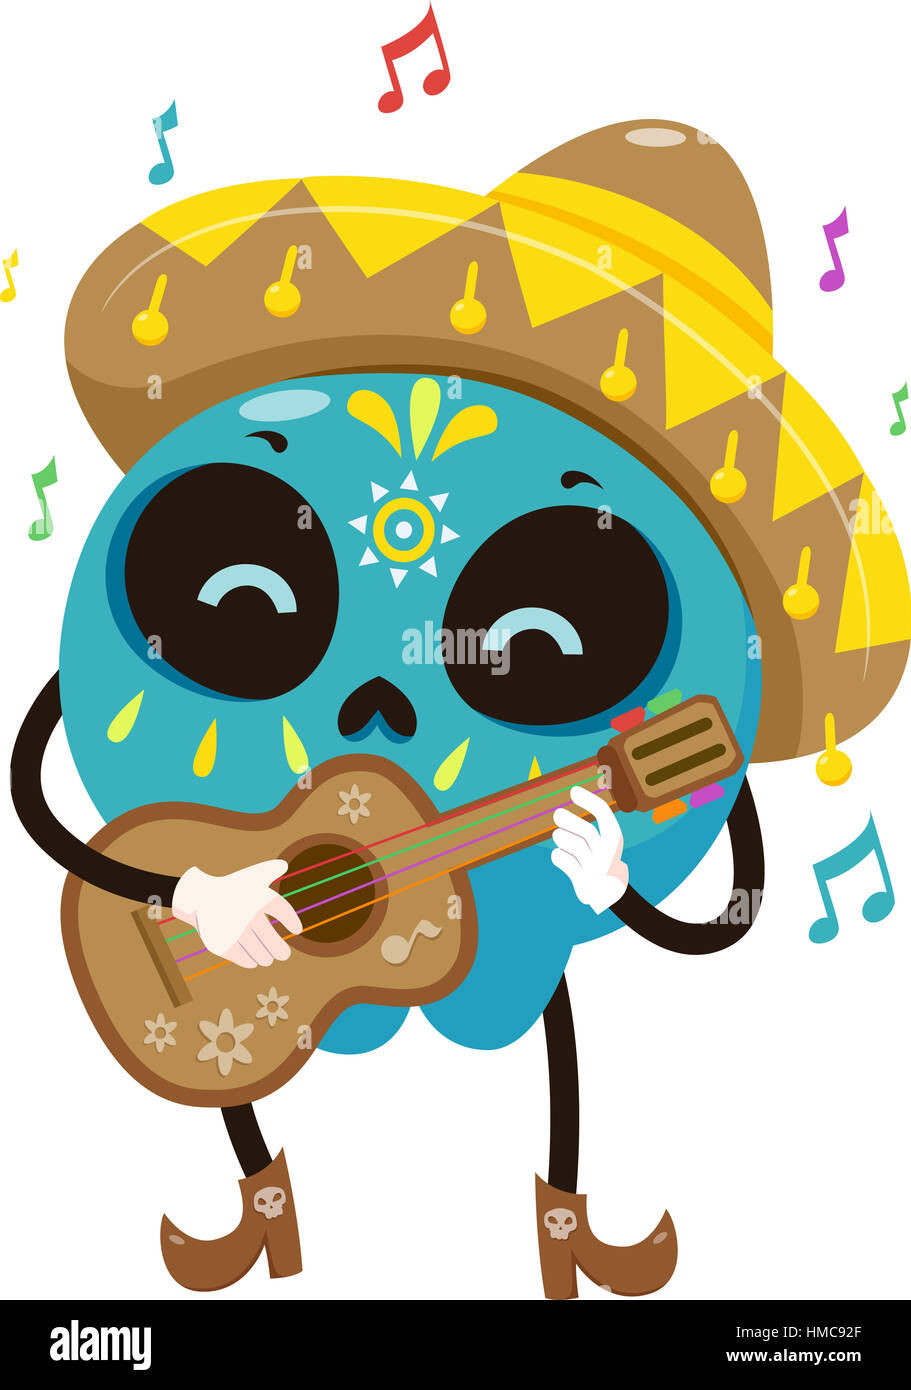 Mascot Illustration d'un crâne en sucre coloré vêtu d'un costume de mariachi de gratter une guitare Banque D'Images